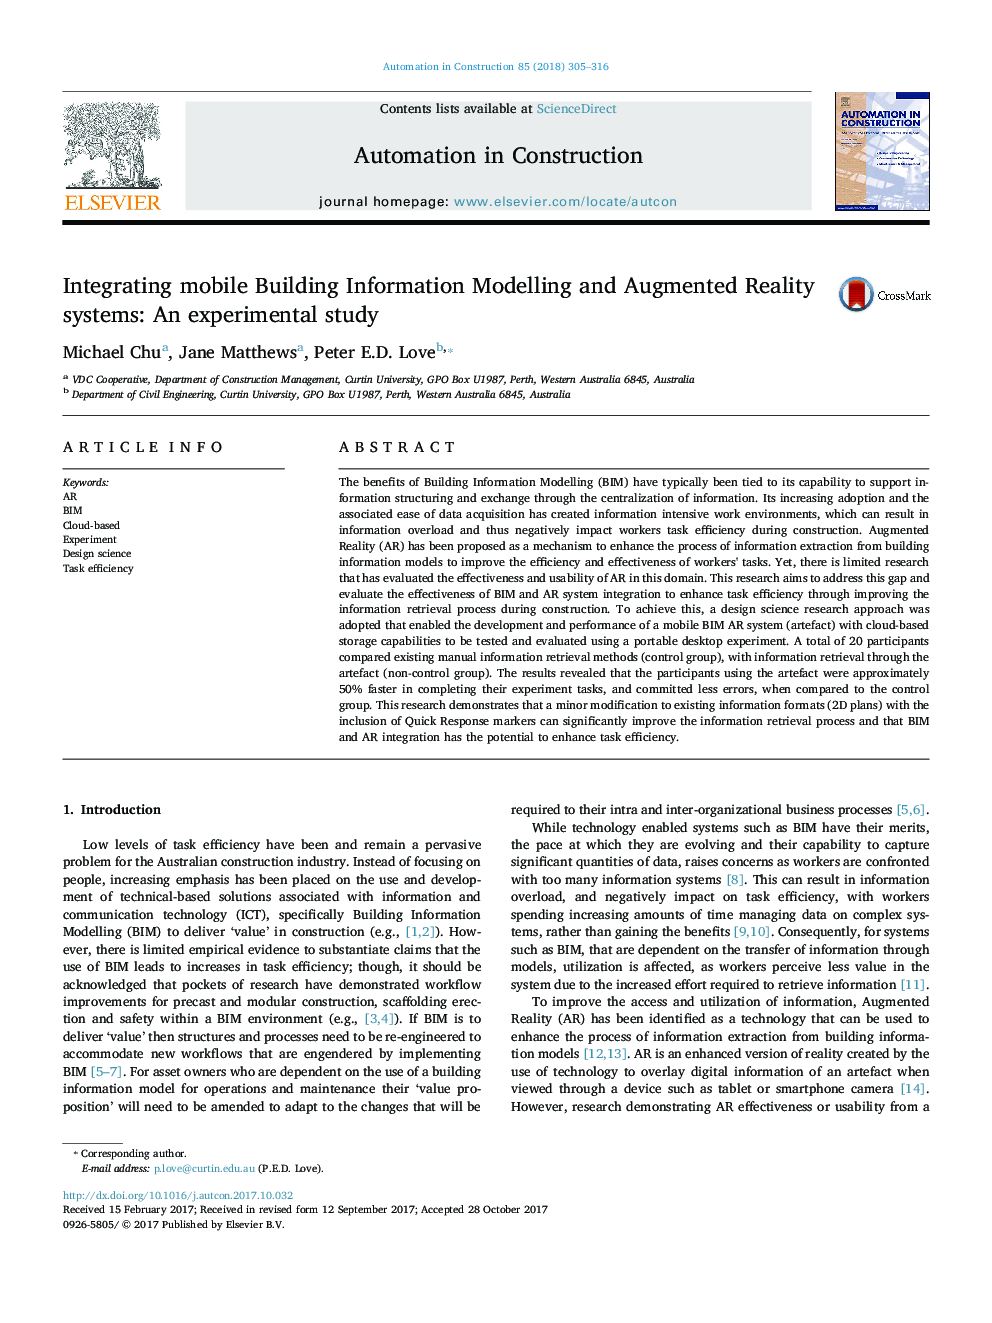 تلفیق مدل سازی اطلاعات ساختمان و سیستم های واقعیت افزوده: یک مطالعه تجربی 